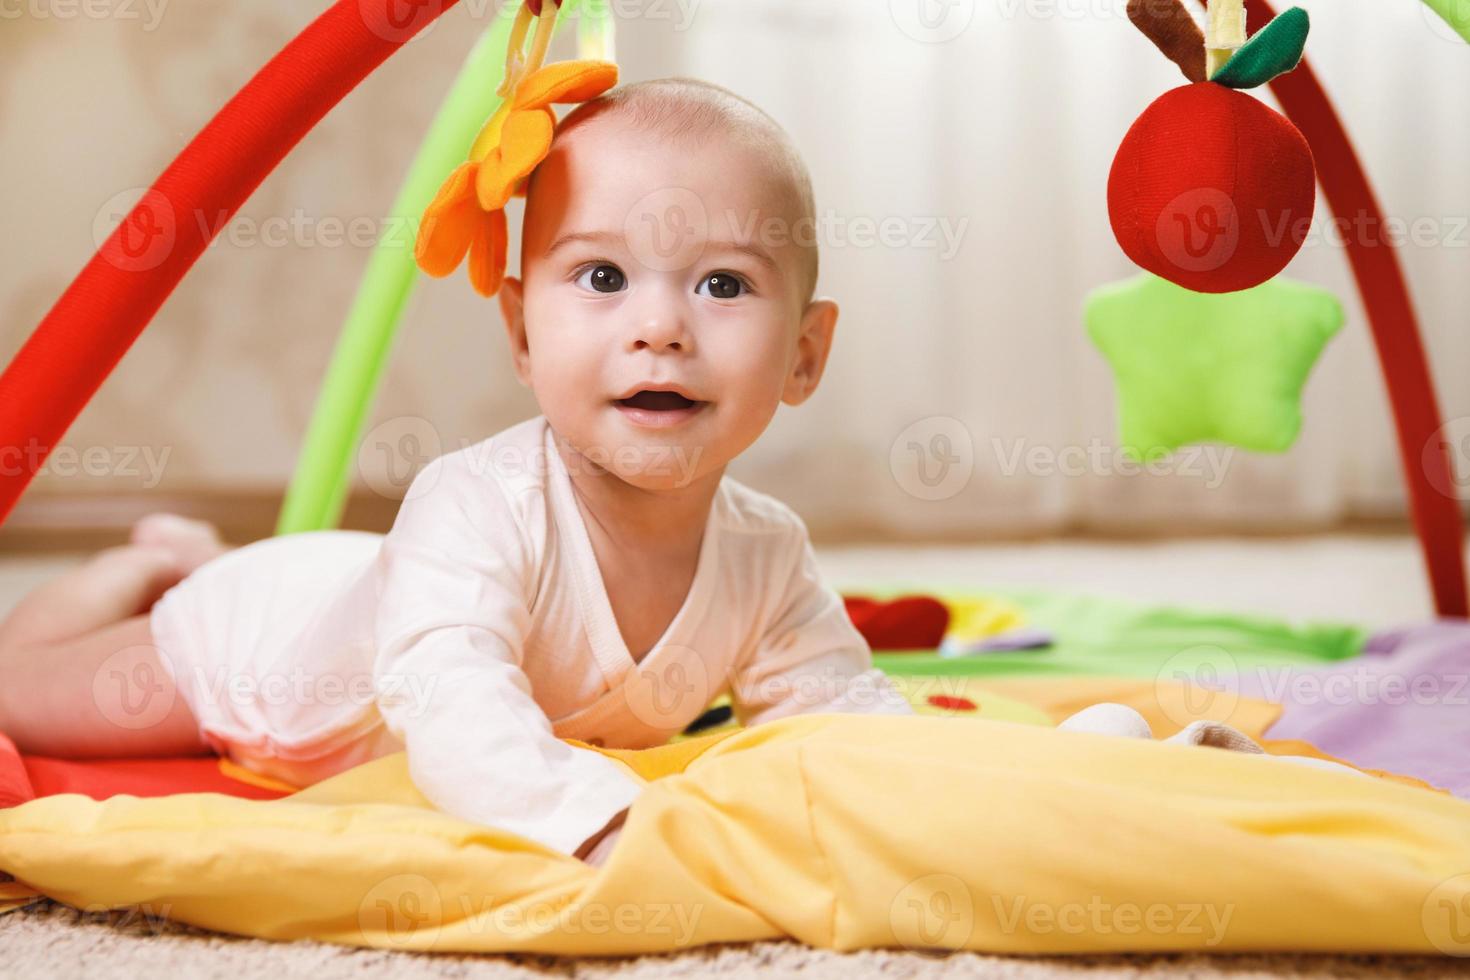 süßes baby spielt auf der aktivitätsmatte foto